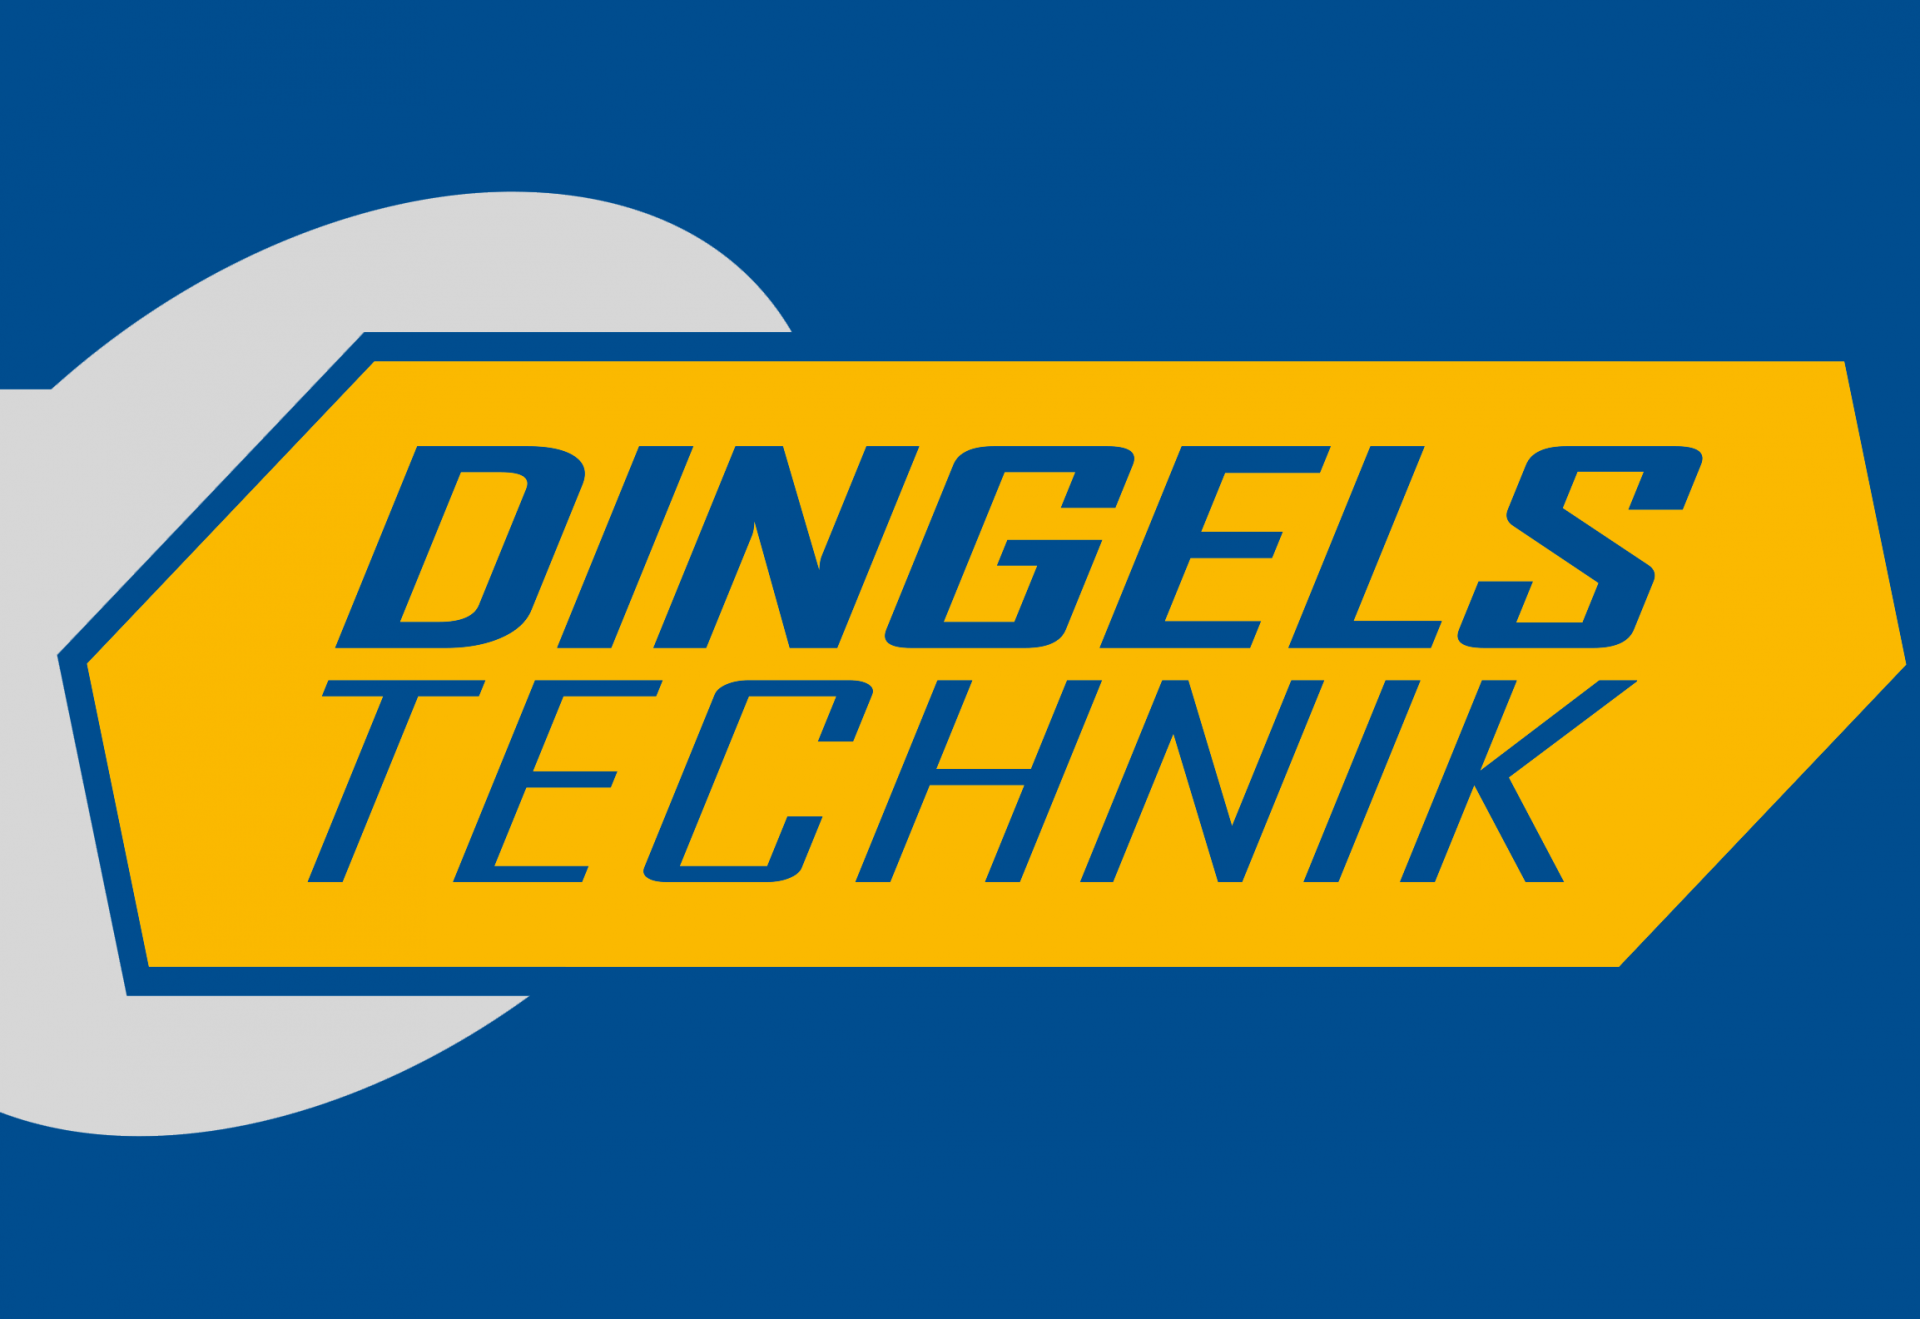 dingels-technik-logo-sg